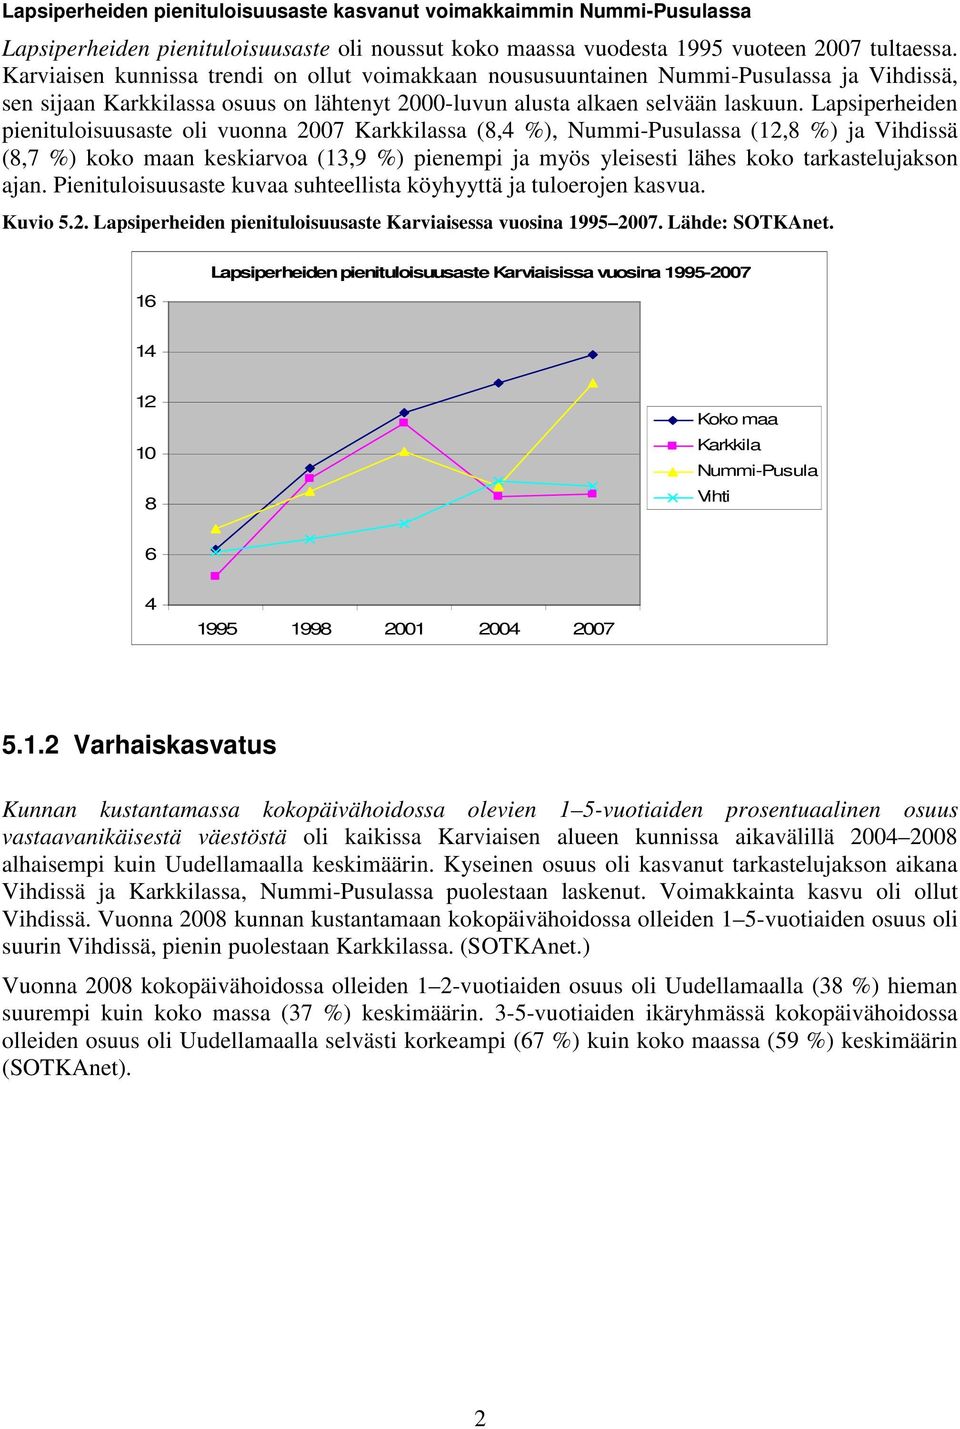 Lapsiperheiden pienituloisuusaste oli vuonna 7 Karkkilassa (, %), Nummi-Pusulassa (, %) ja Vihdissä (,7 %) koko maan keskiarvoa (,9 %) pienempi ja myös yleisesti lähes koko tarkastelujakson ajan.